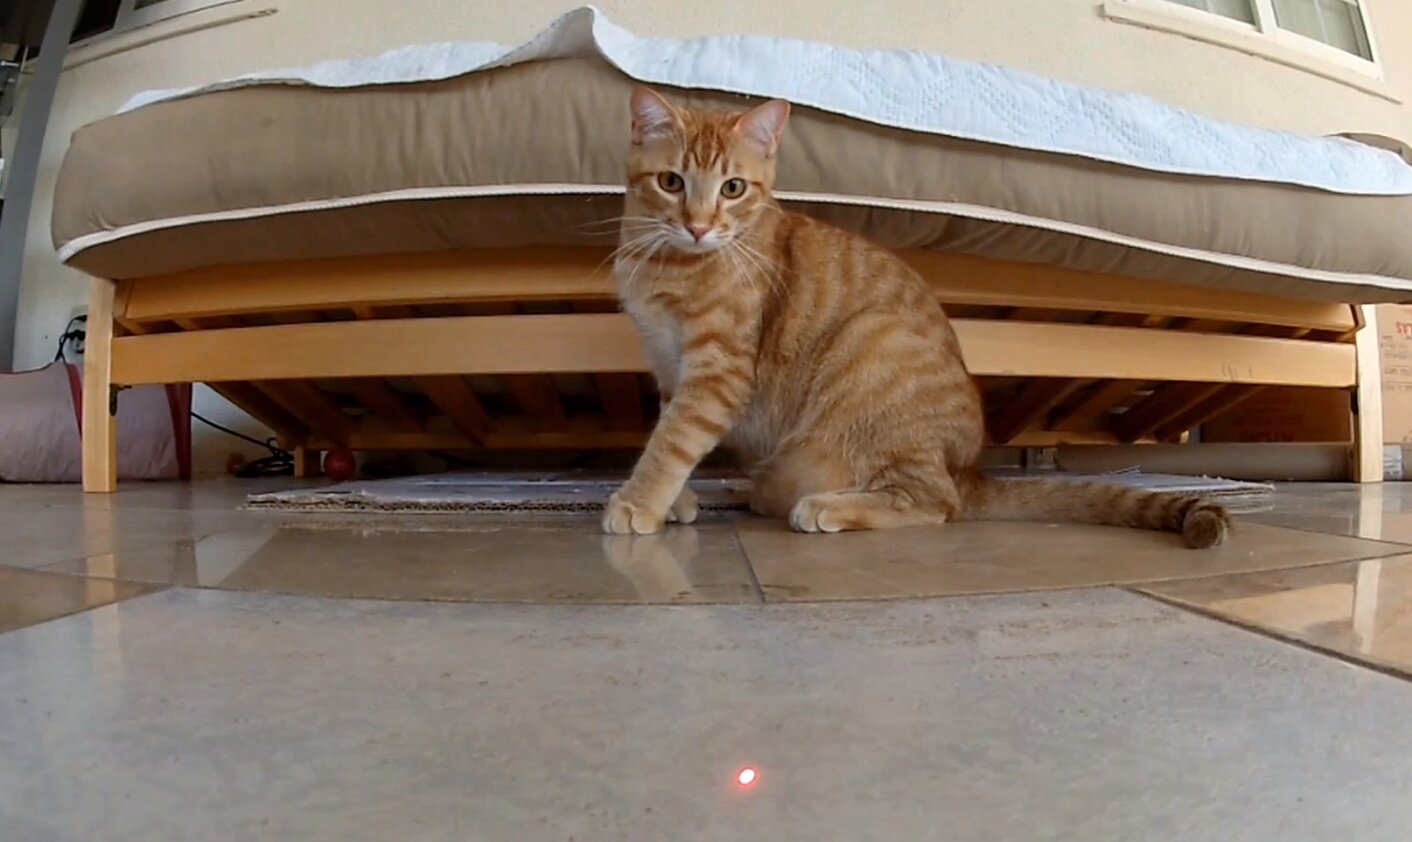 lazer ışığını takip eden kedi